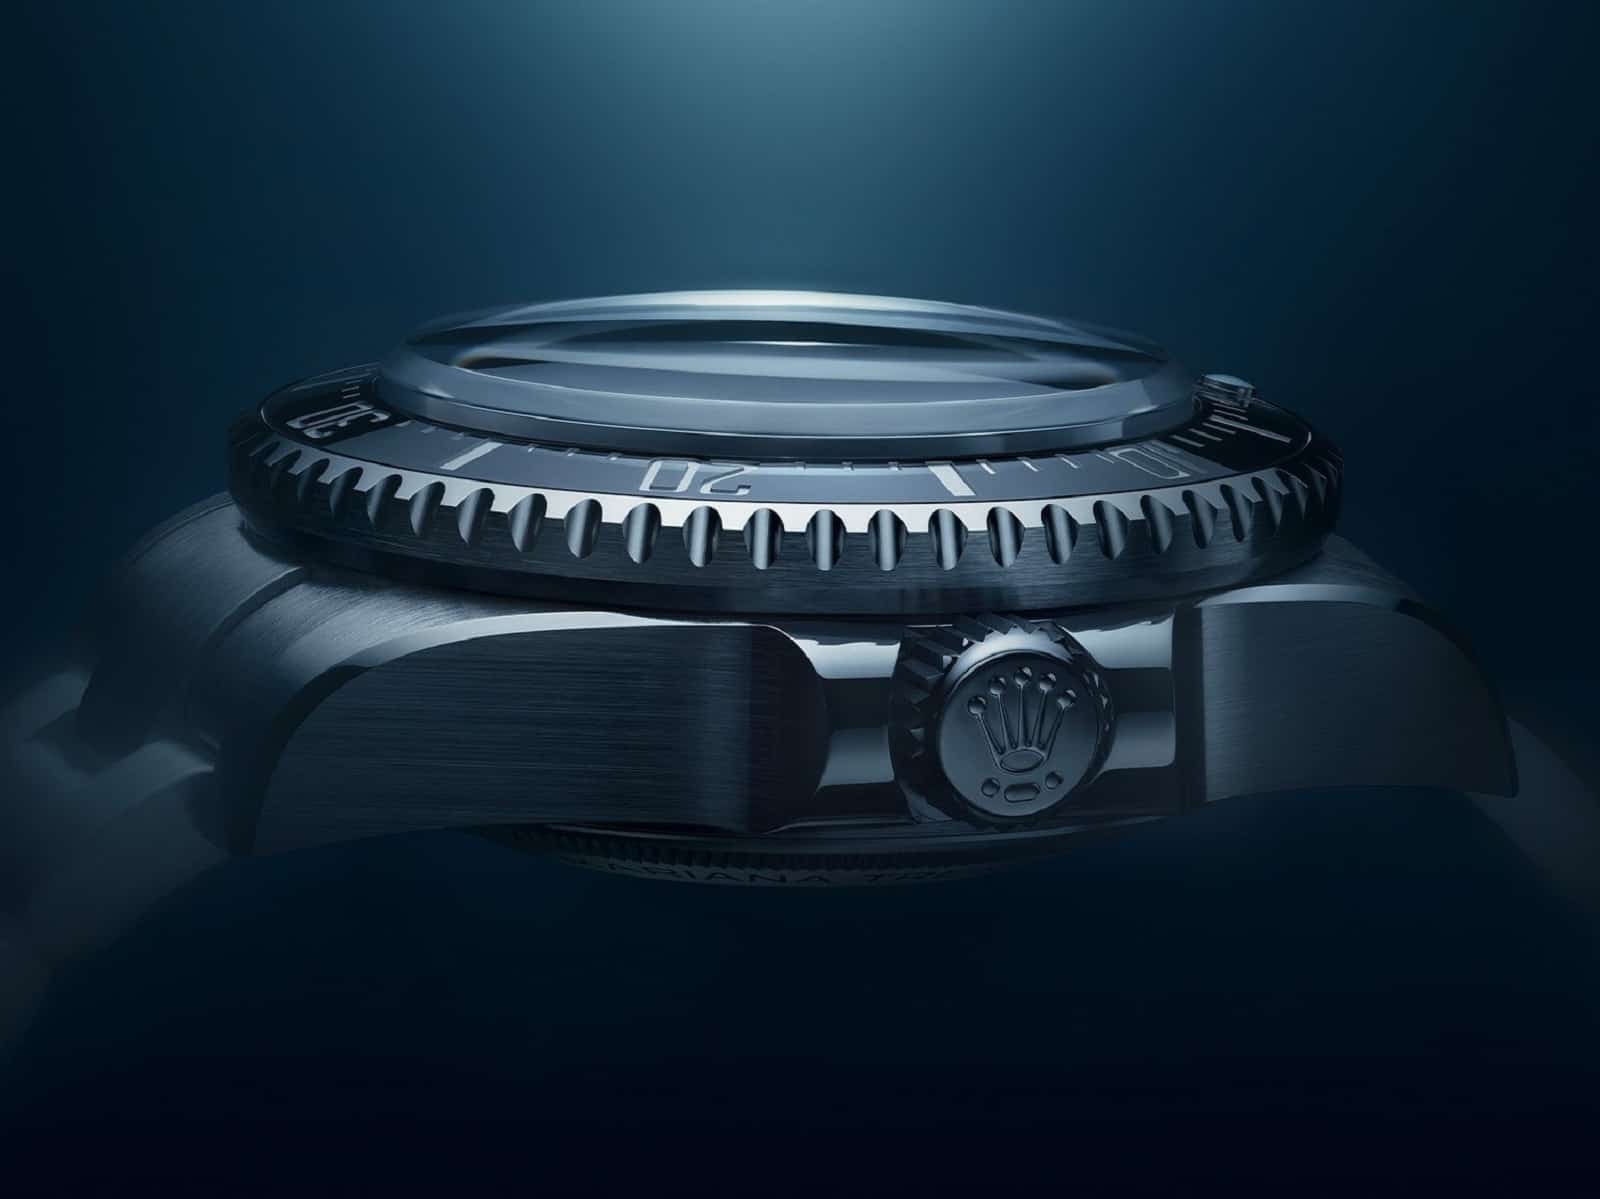 Bauhöhe der Rolex Deepsea Challenge mit dem über 9 mm hohen Saphirglas